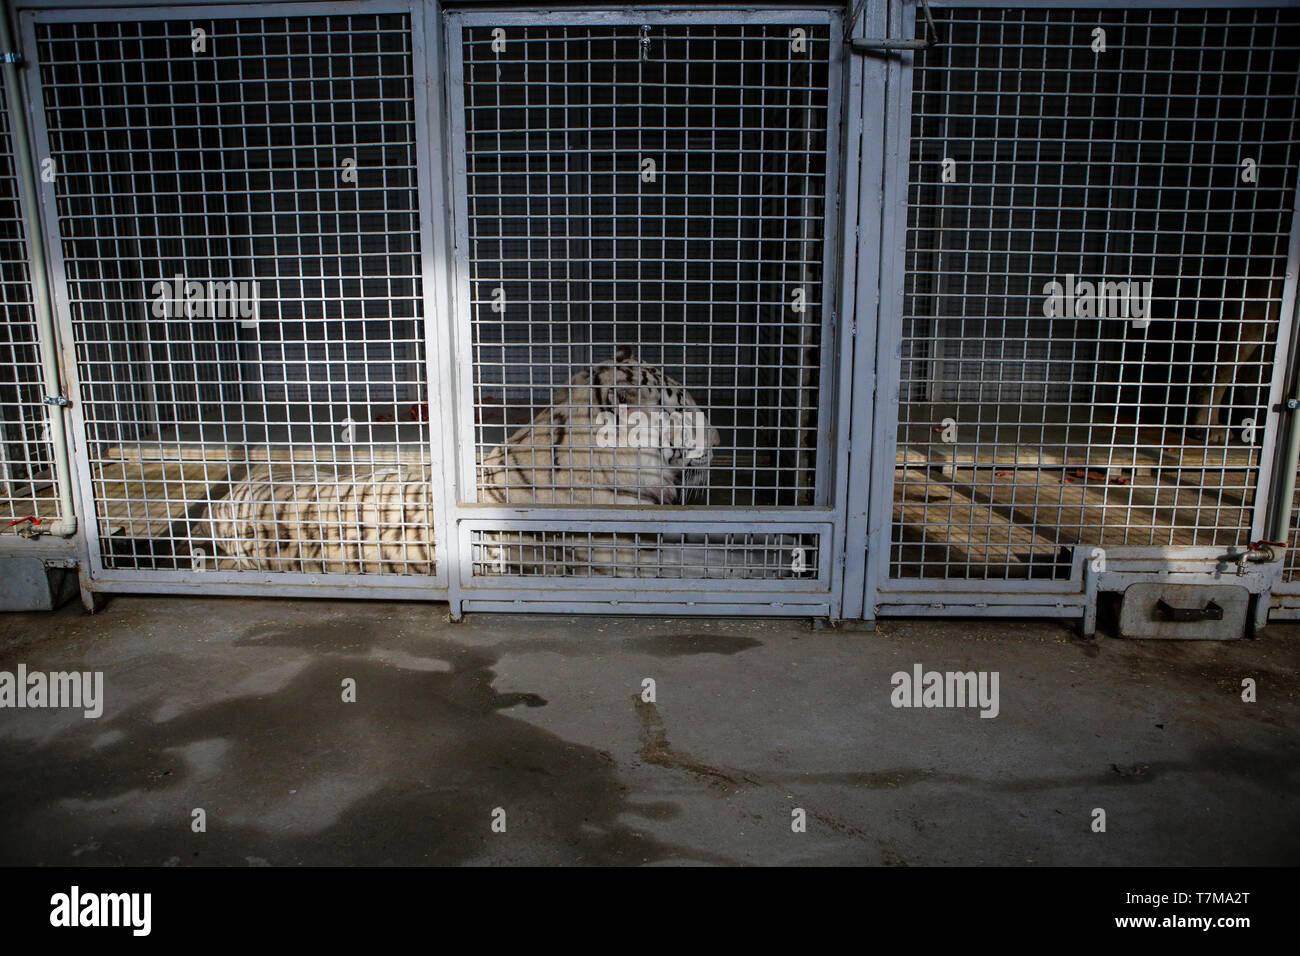 Weißer Tiger im Käfig in einem Zirkus menagerie - Tierquälerei Stockfoto